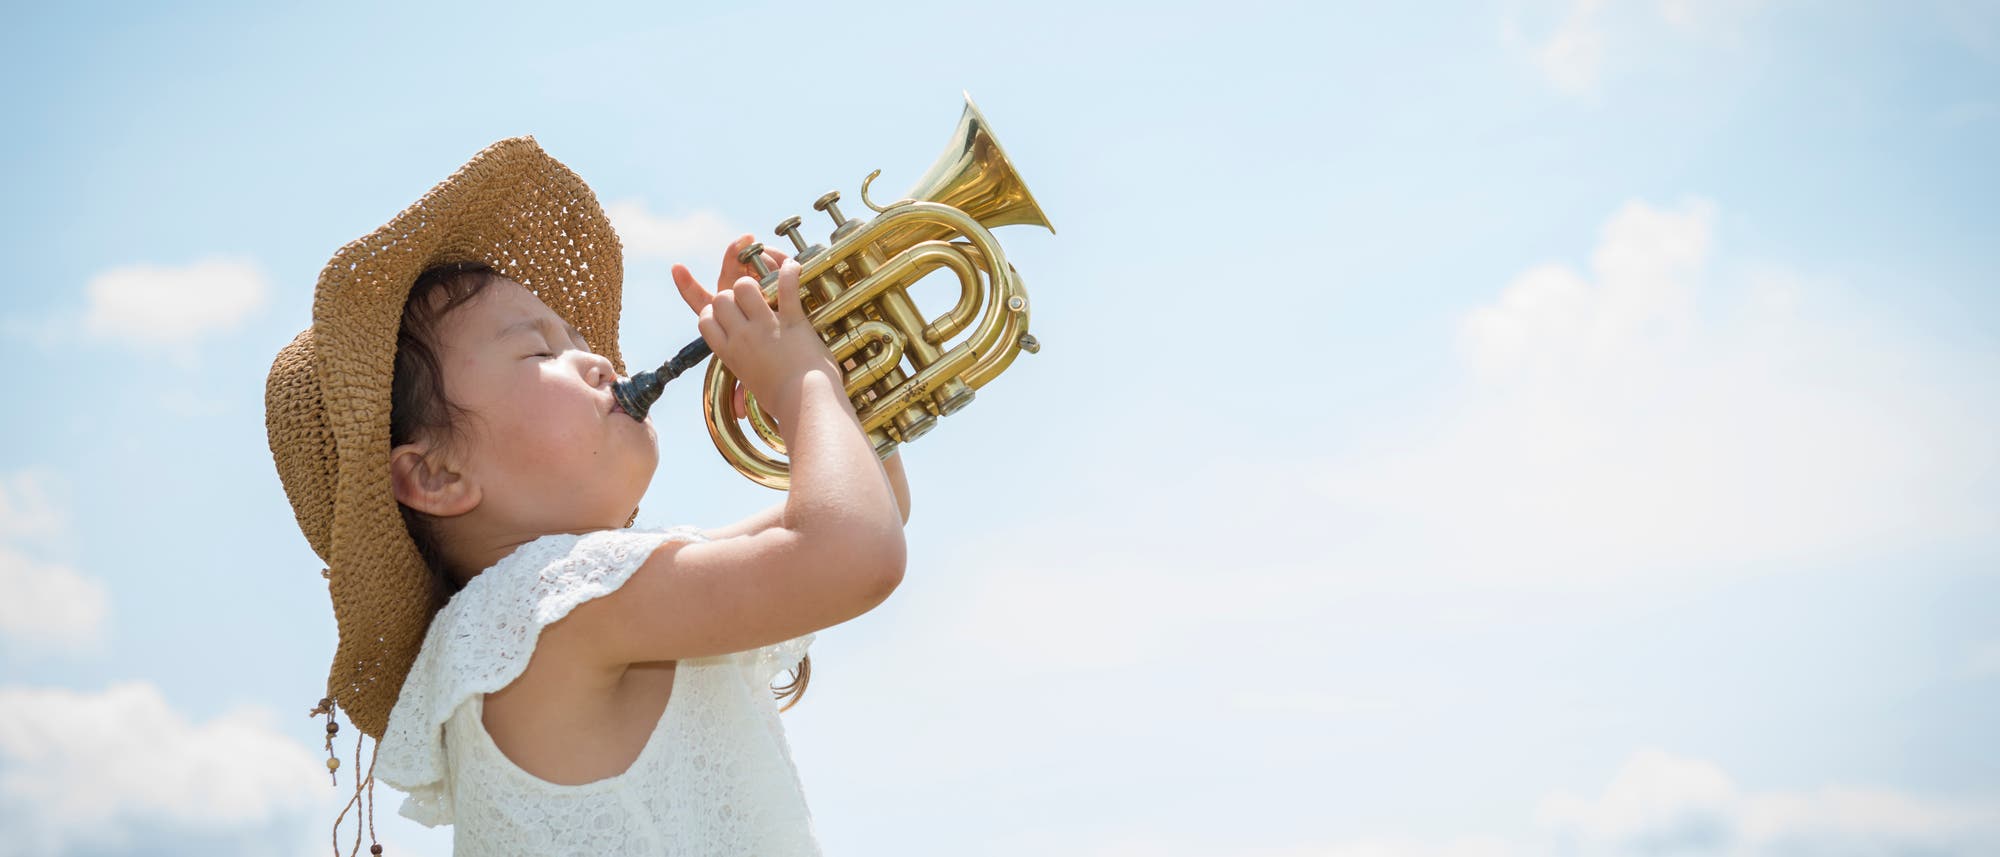 Ein kleines Mädchen mit weißem Kleid steht vor einem blauen Himmel und bläst in eine kleine Trompete.